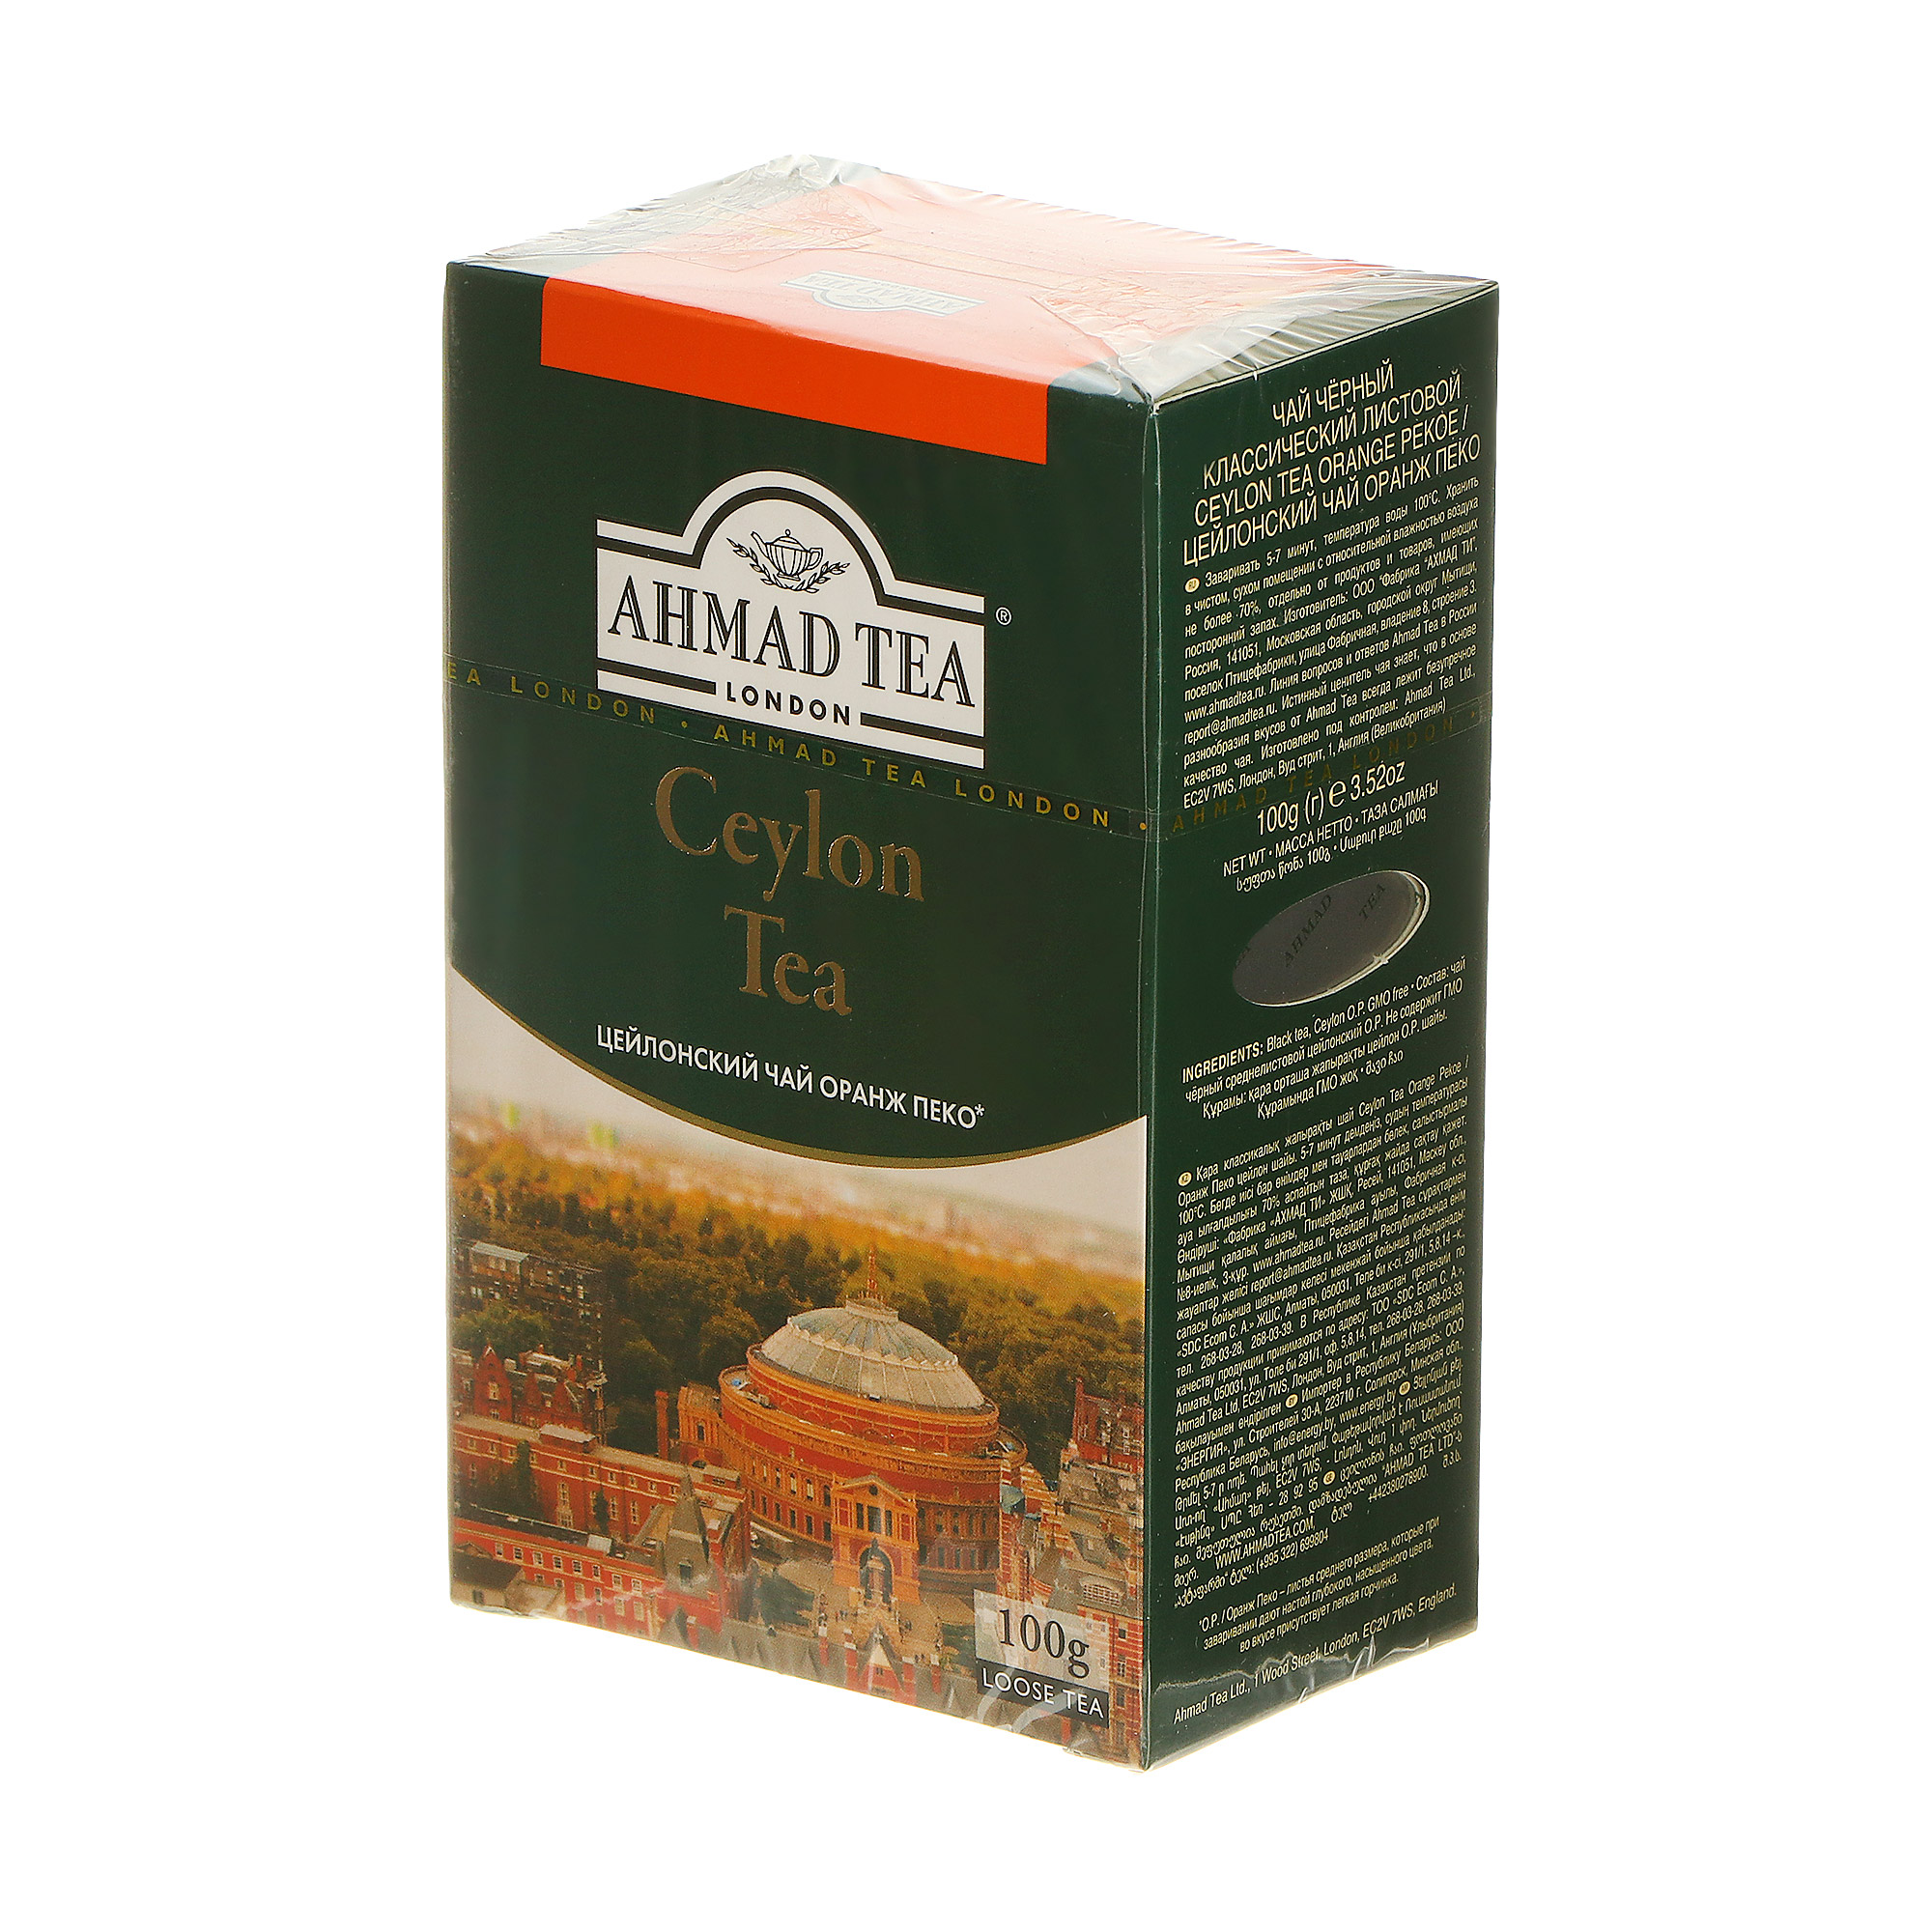 Чай черный Ahmad Tea Ceylon Tea Orange Pekoe 100 г чай чёрный ahmad tea ceylon tea высокогорный 200 г